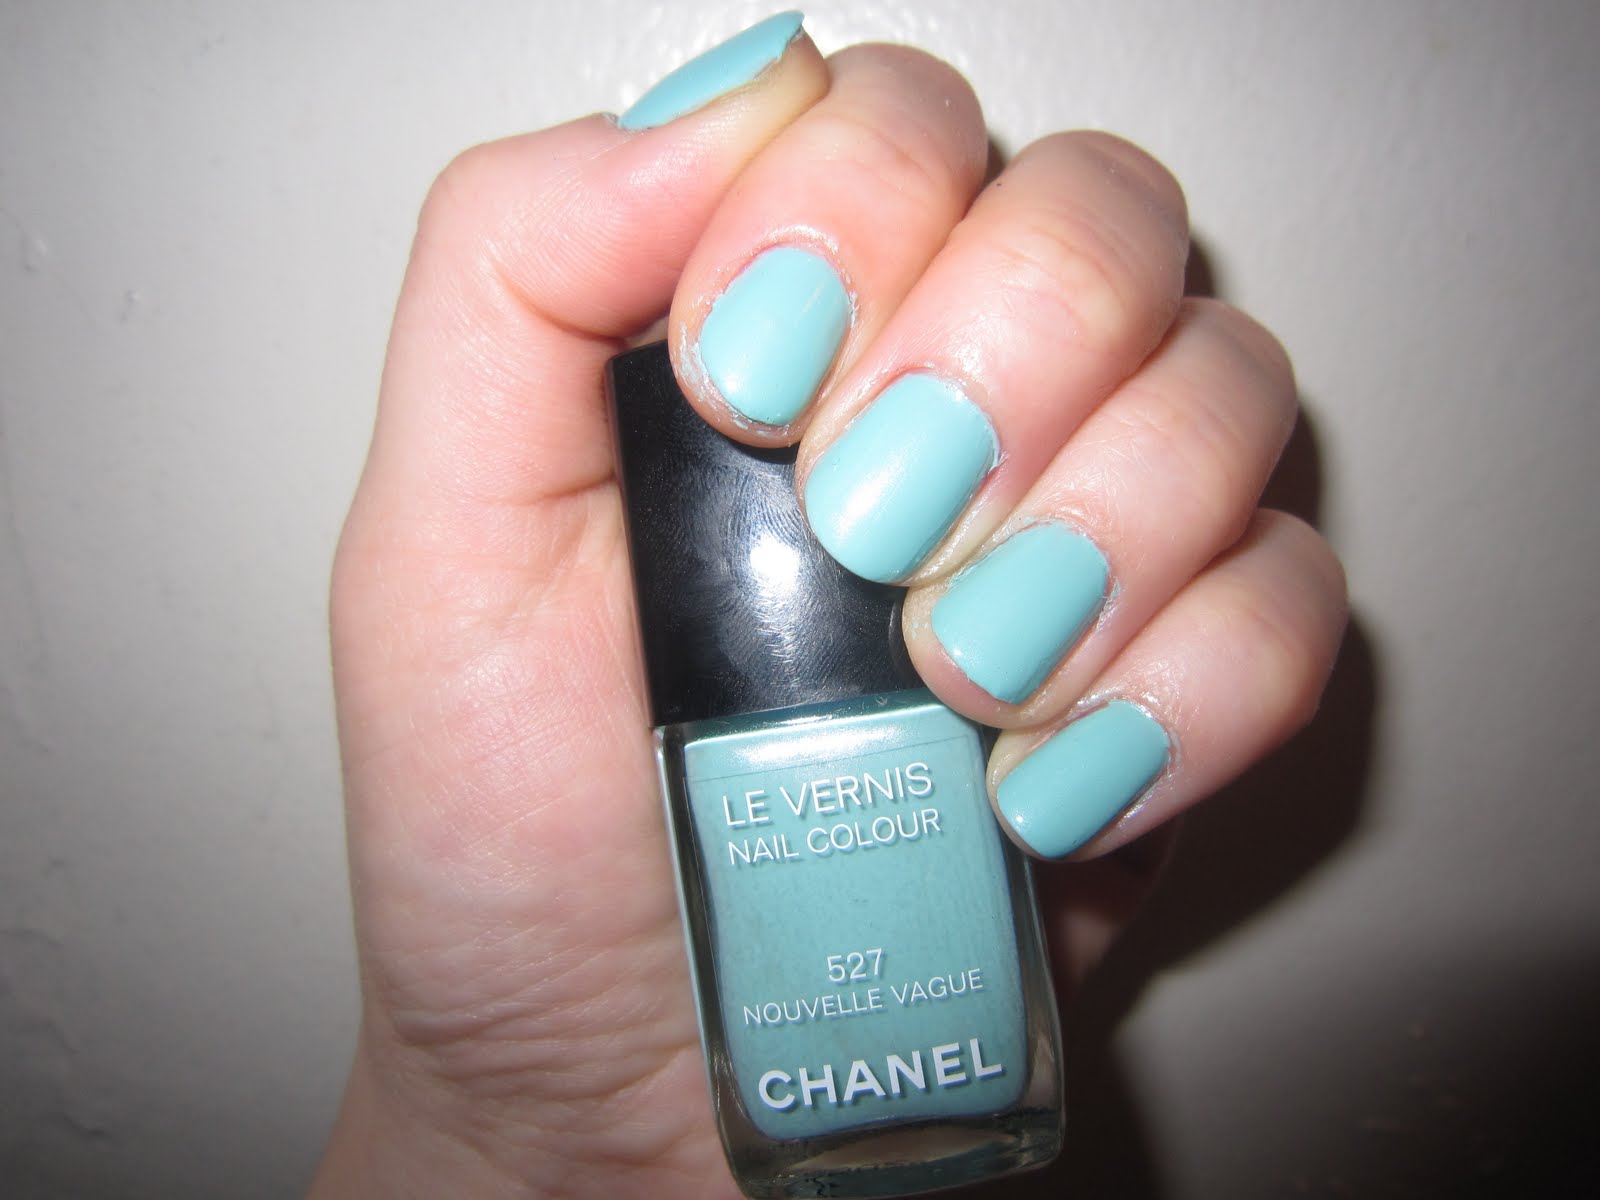 Chanel + Le Vernis Longwear Nail Color in Bleu Pastel